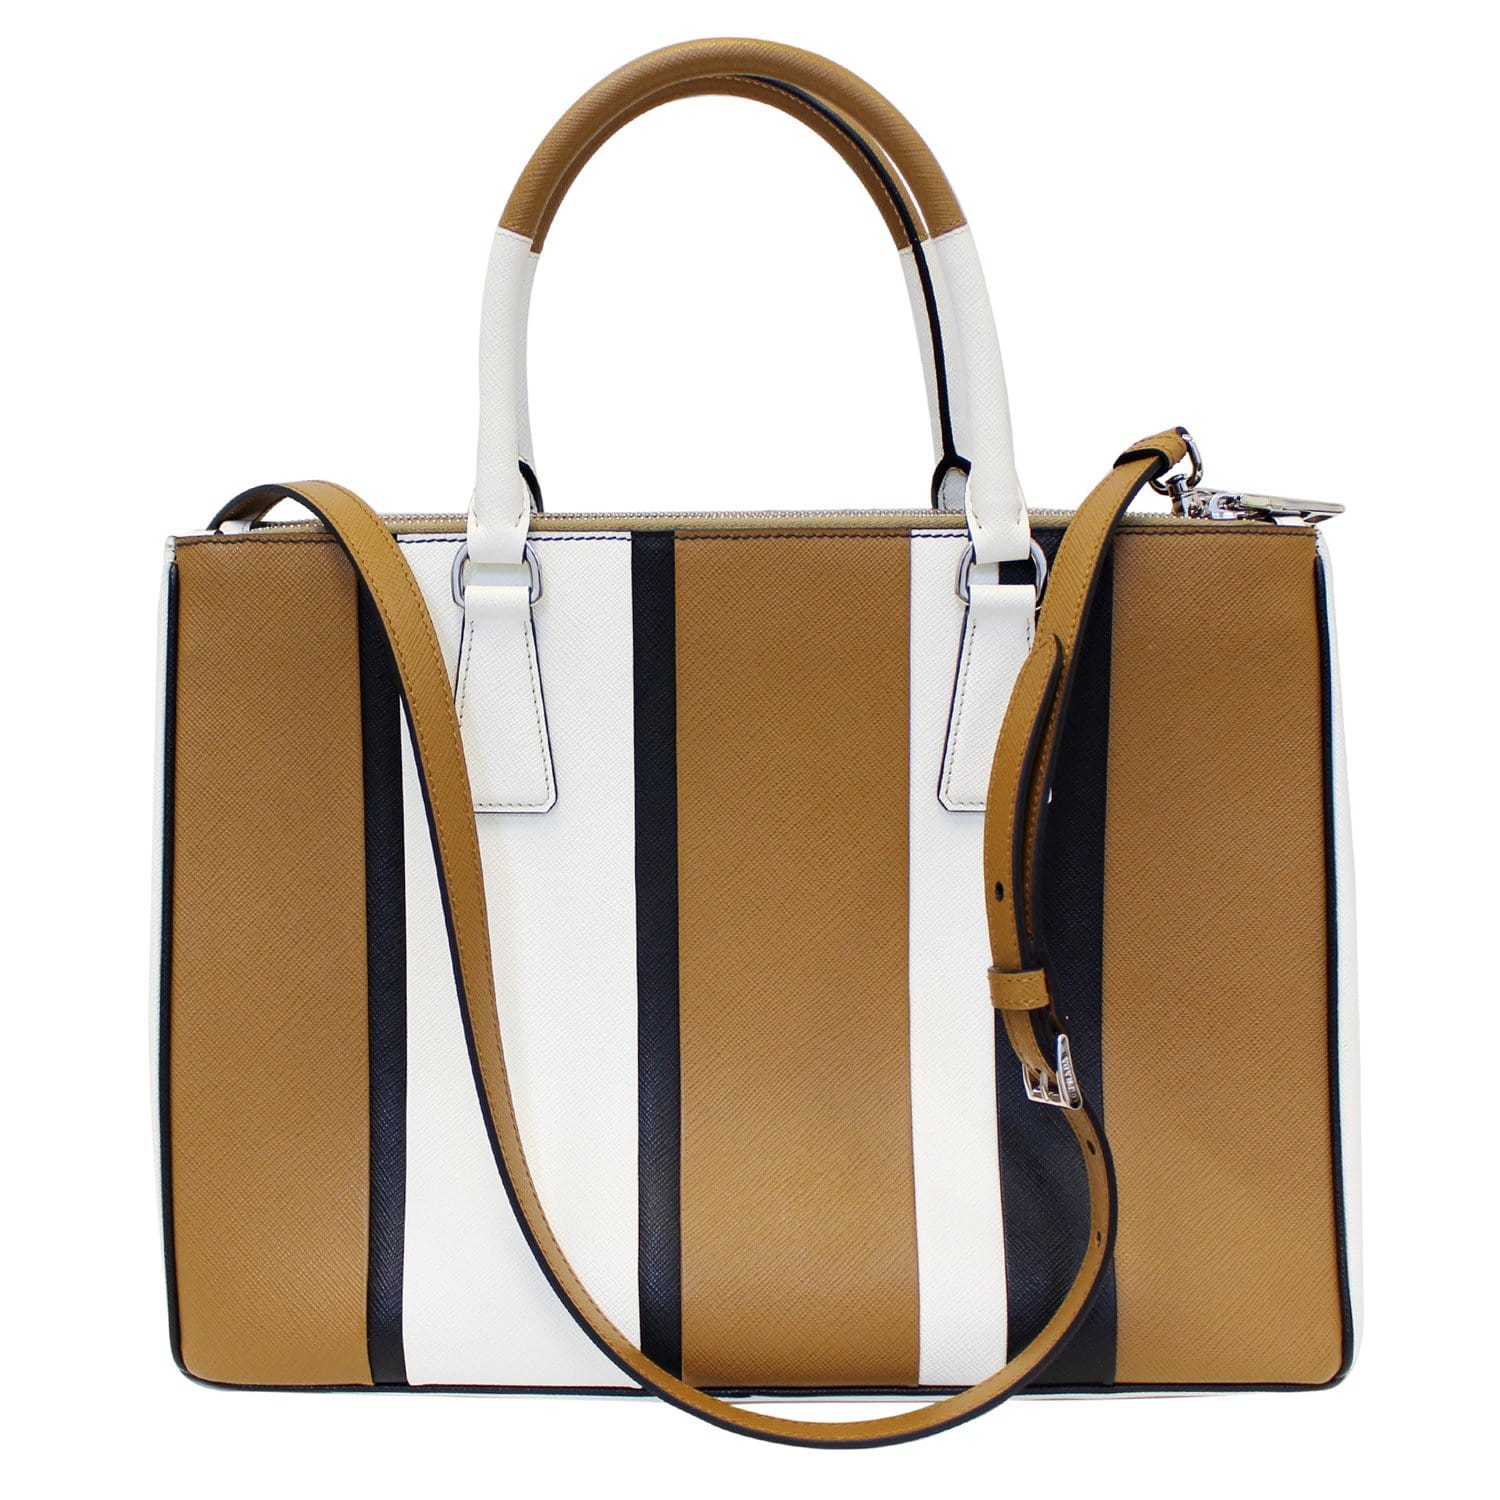 Prada - Men's Saffiano Galleria Bag Tote - Brown - Leather